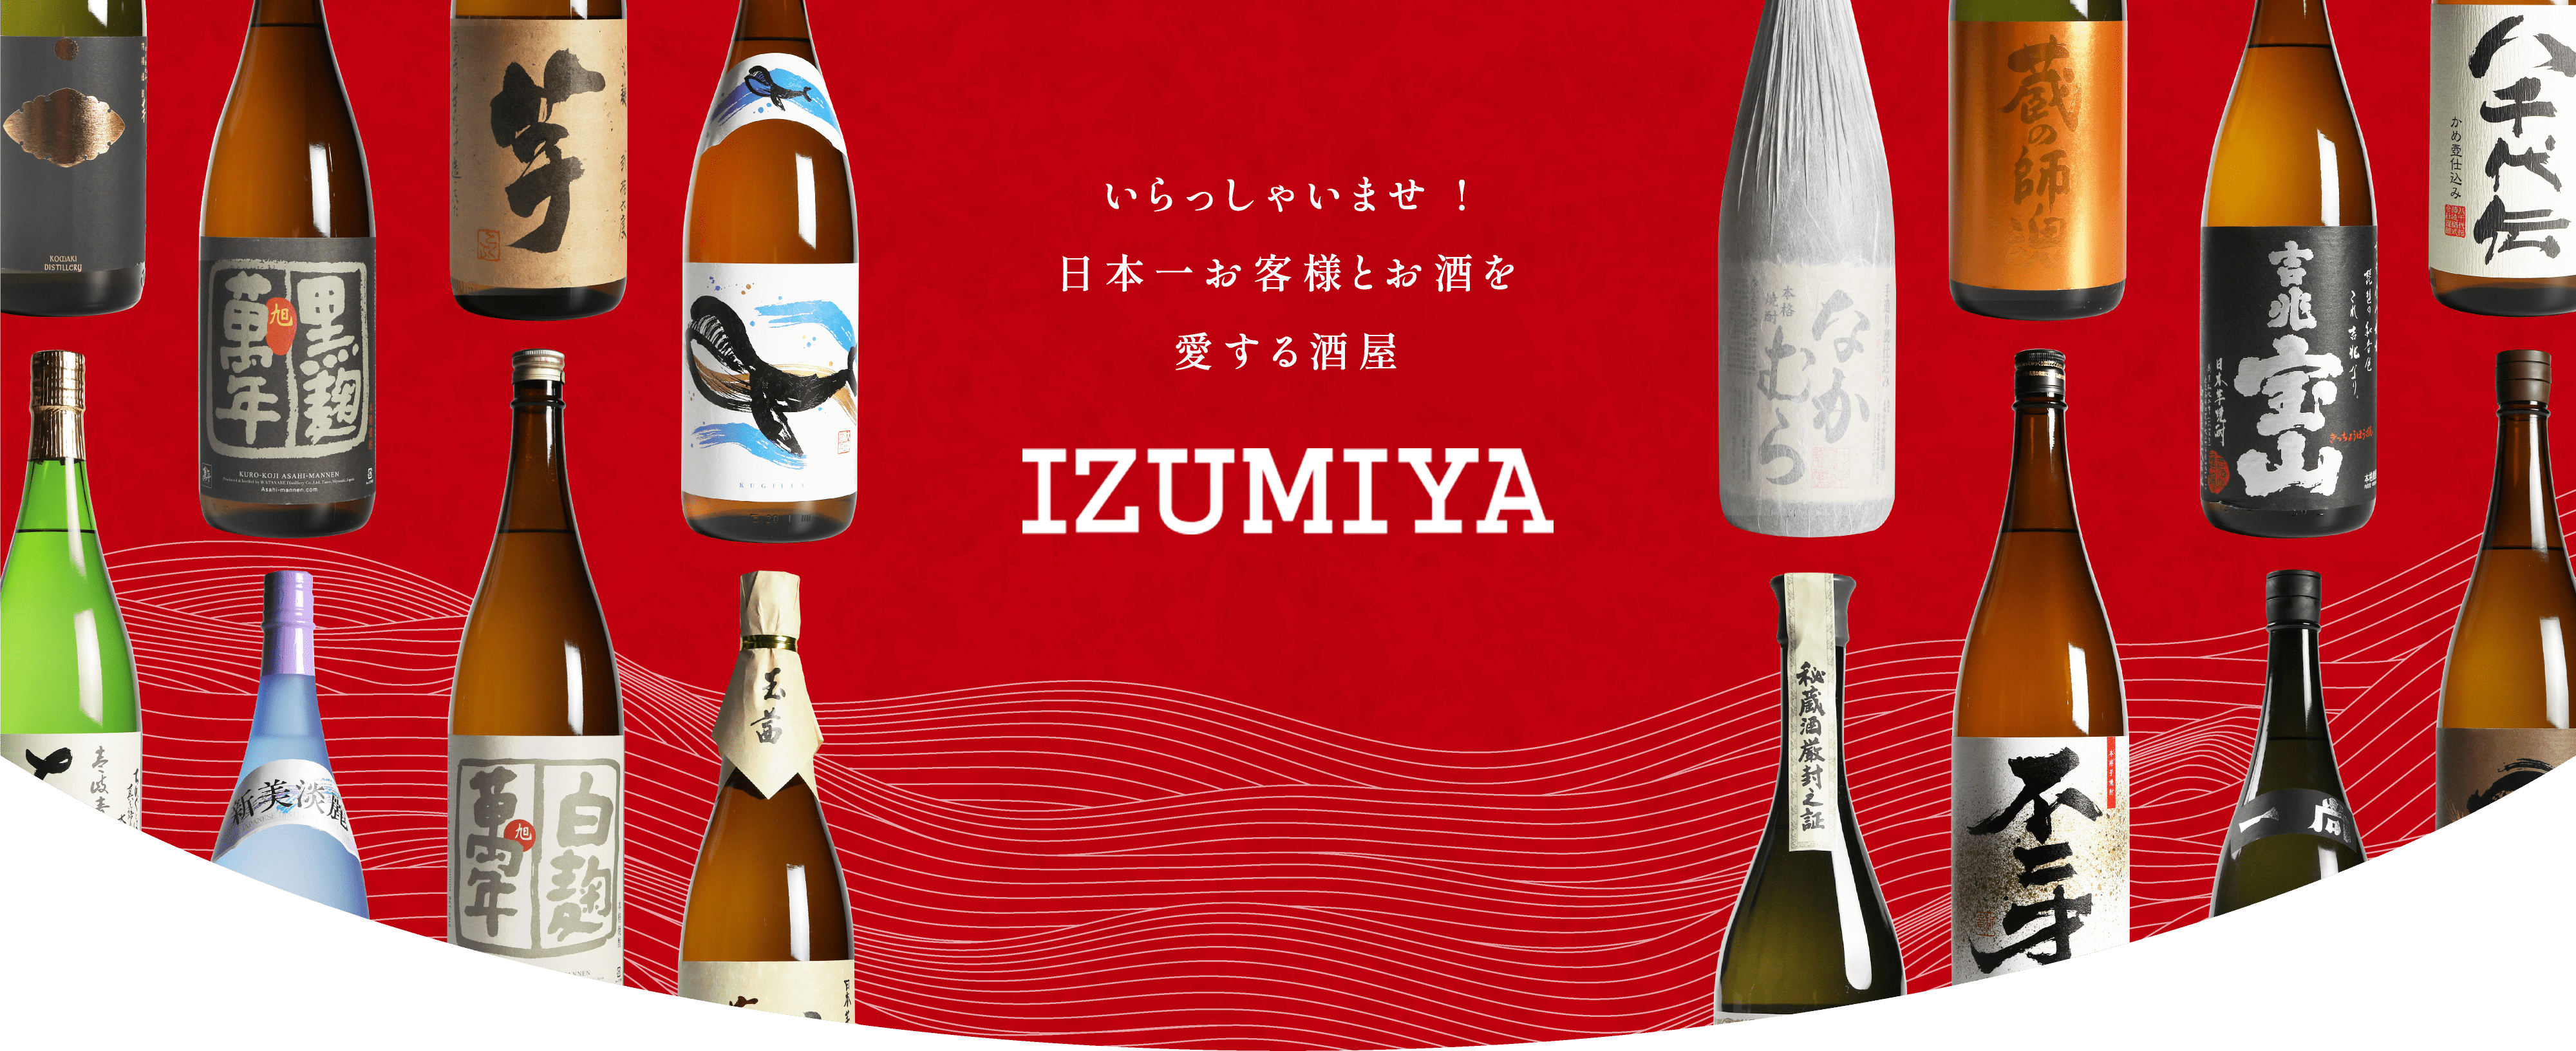 IZUMIYA-SAKE ヘッダー画像